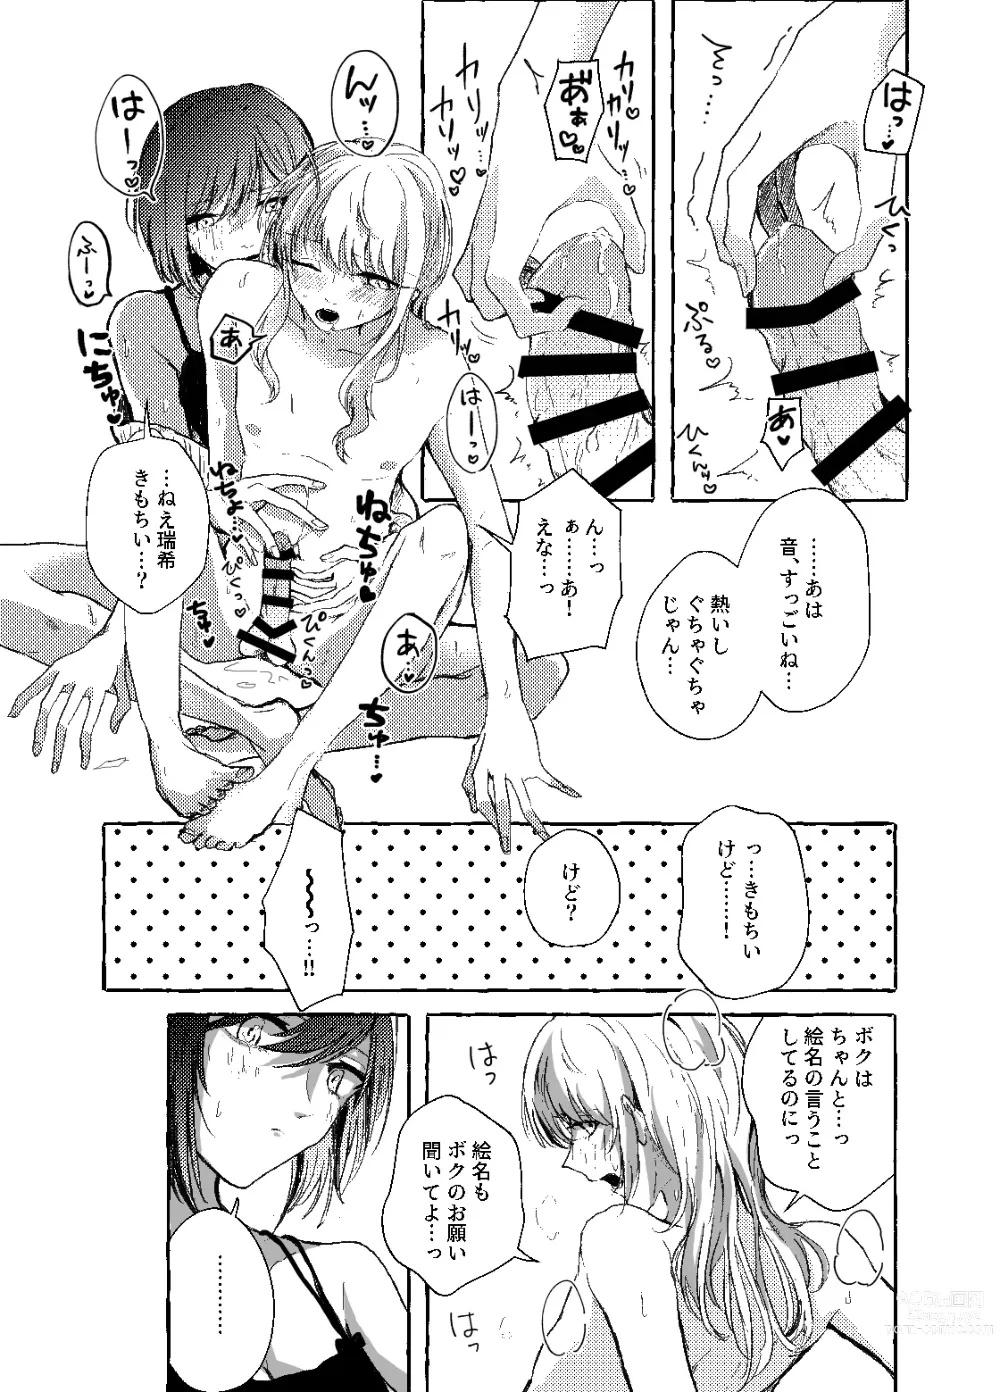 Page 18 of doujinshi Hakoniwa no Naka no Kimi